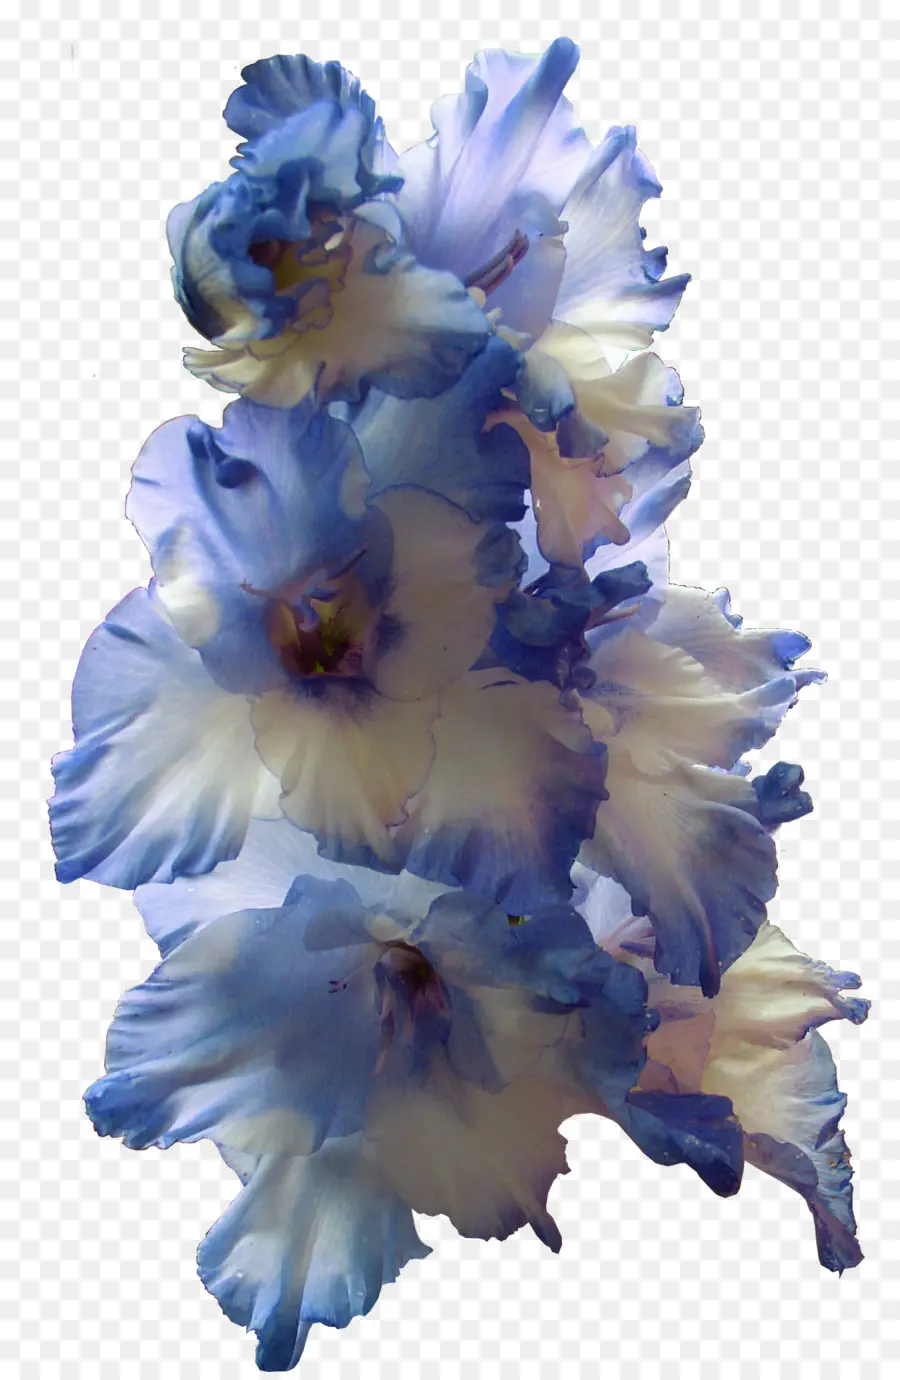 Gladiolus，Flor PNG